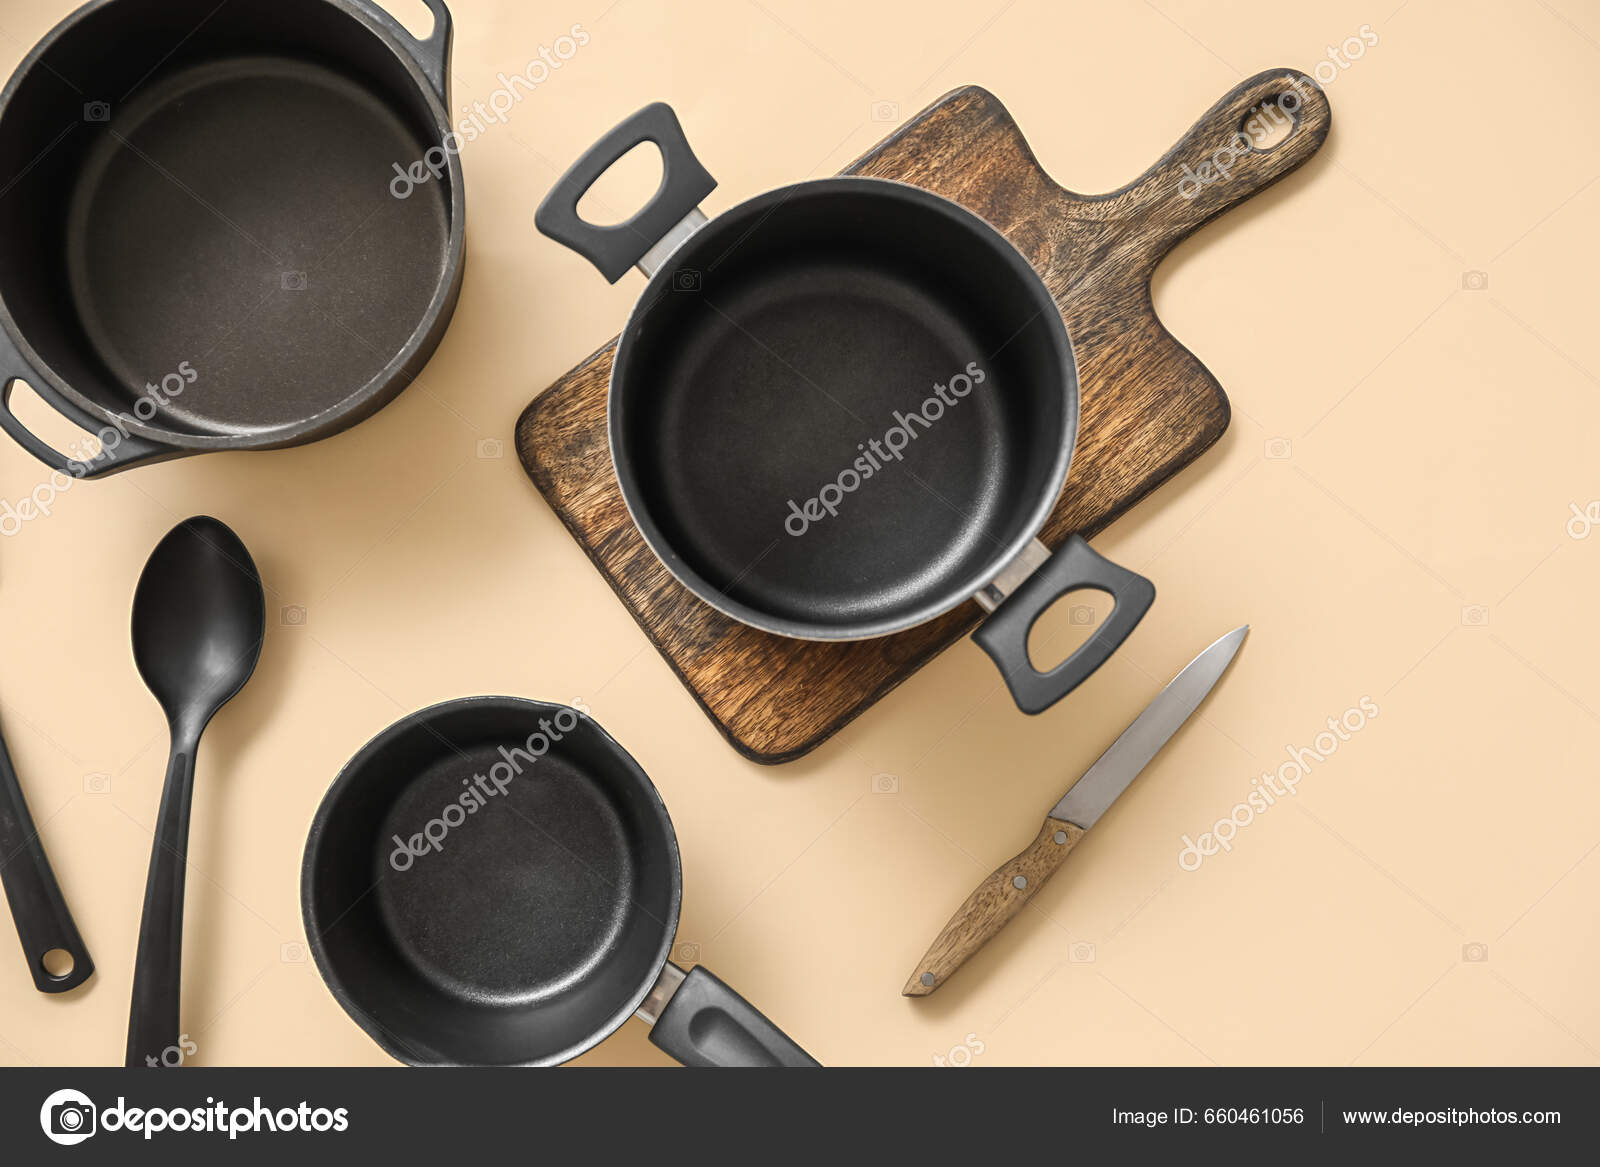 Cooking Pots Kitchen Utensils Beige Background Stock Photo by ©serezniy  660461056